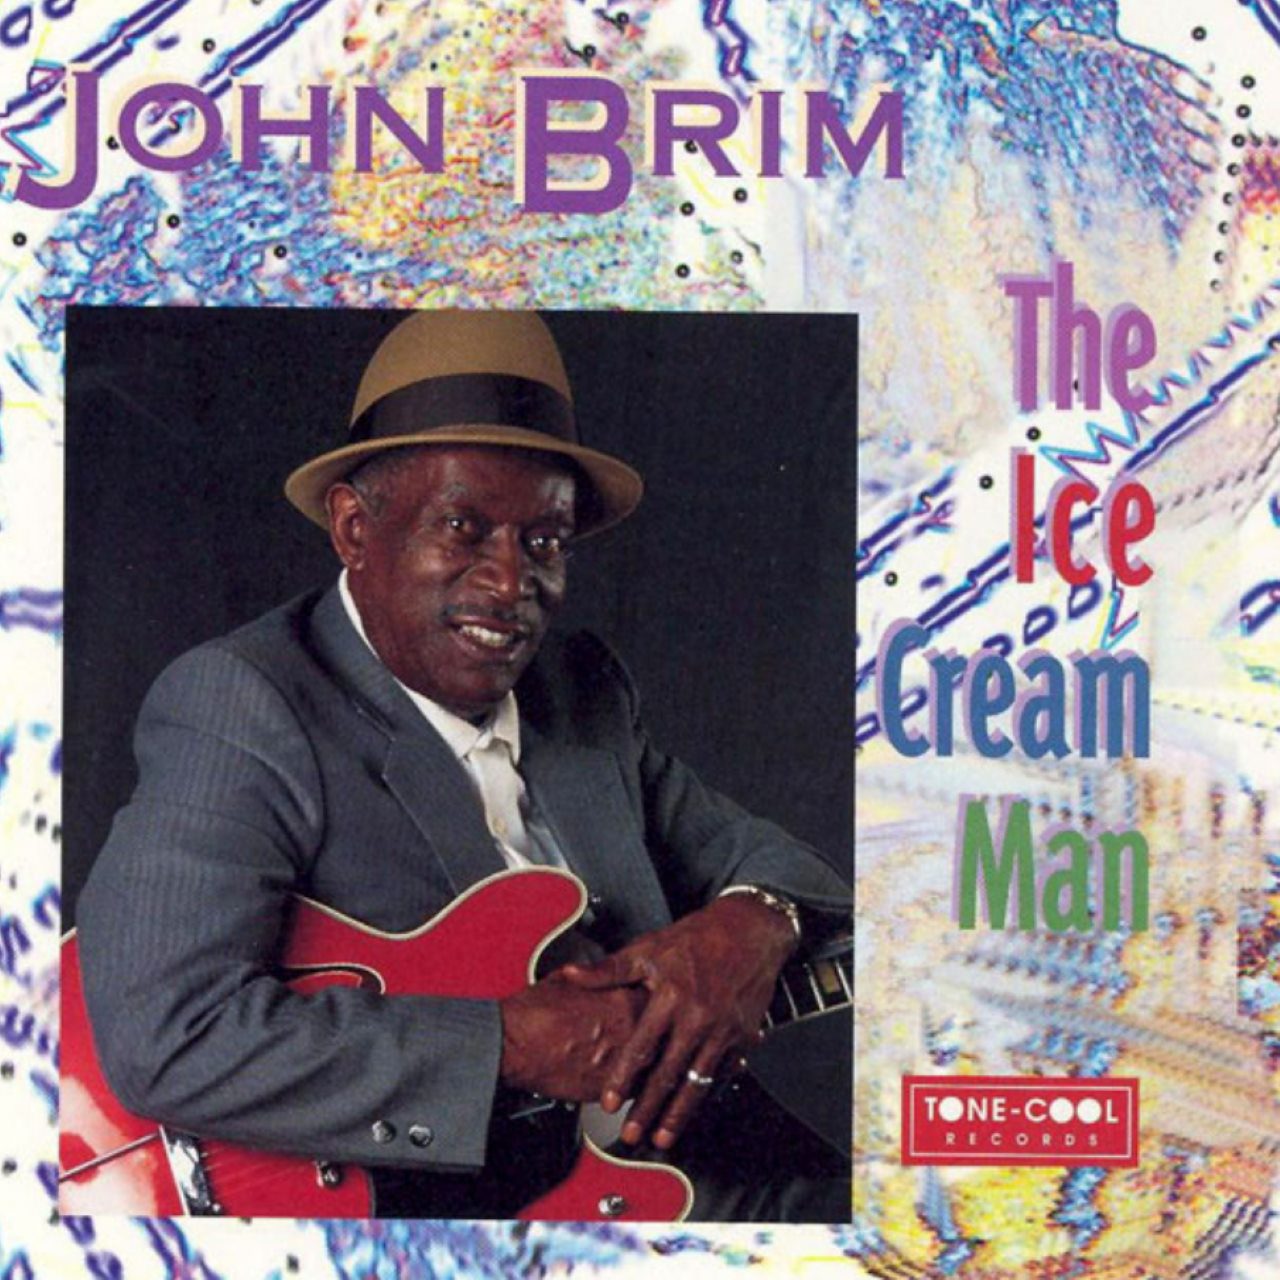 John Brim – The Ice Cream Man cover album